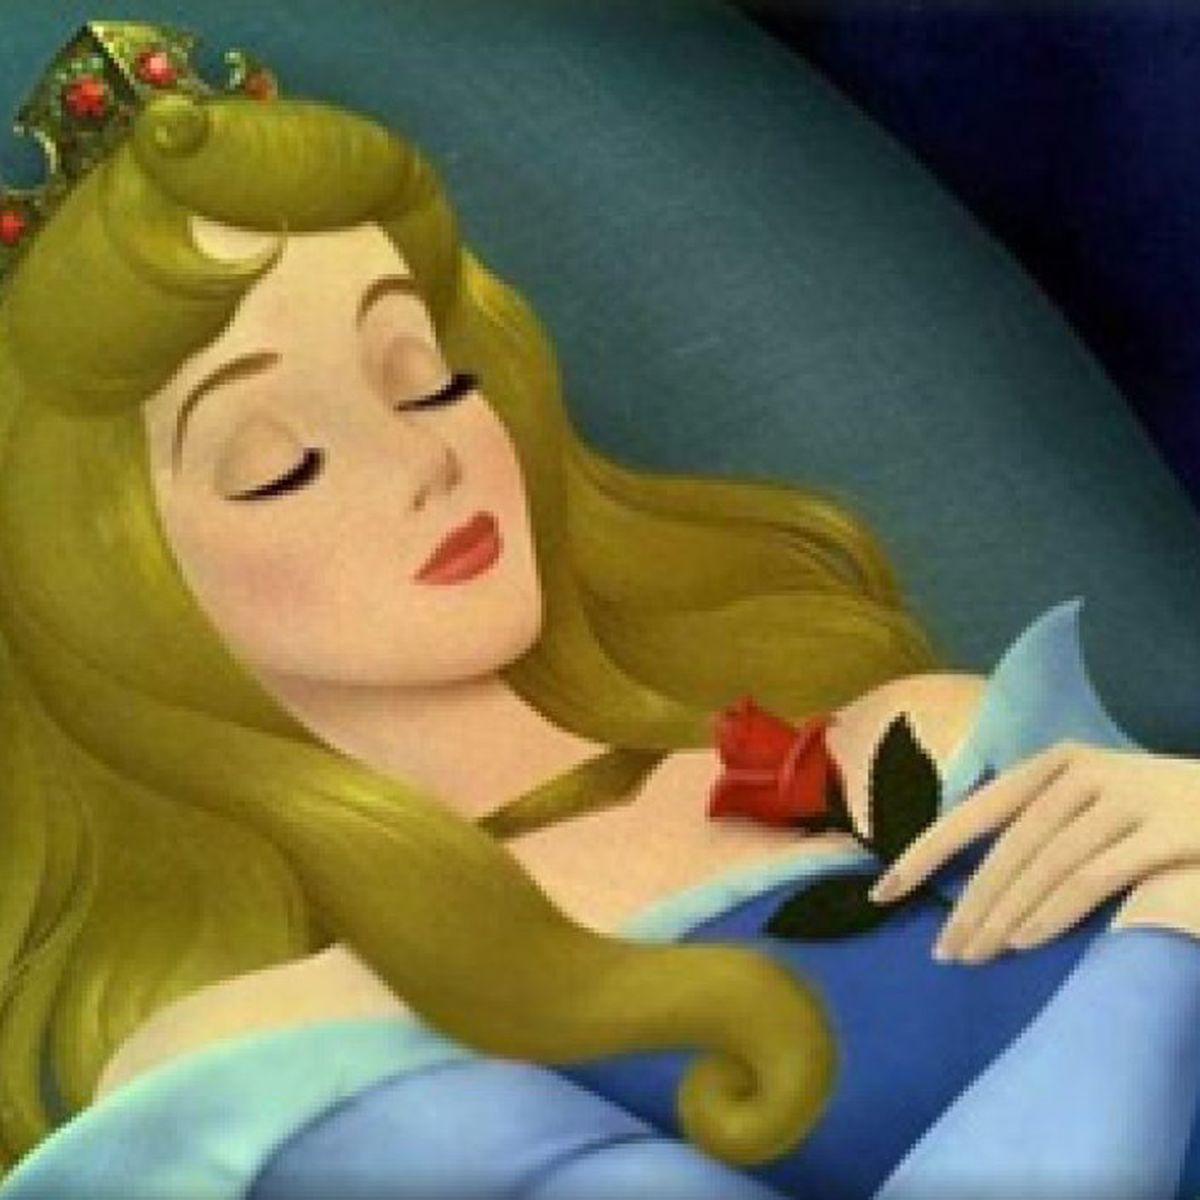 La Bella durmiente' cumple 50 años de reinado en Disney